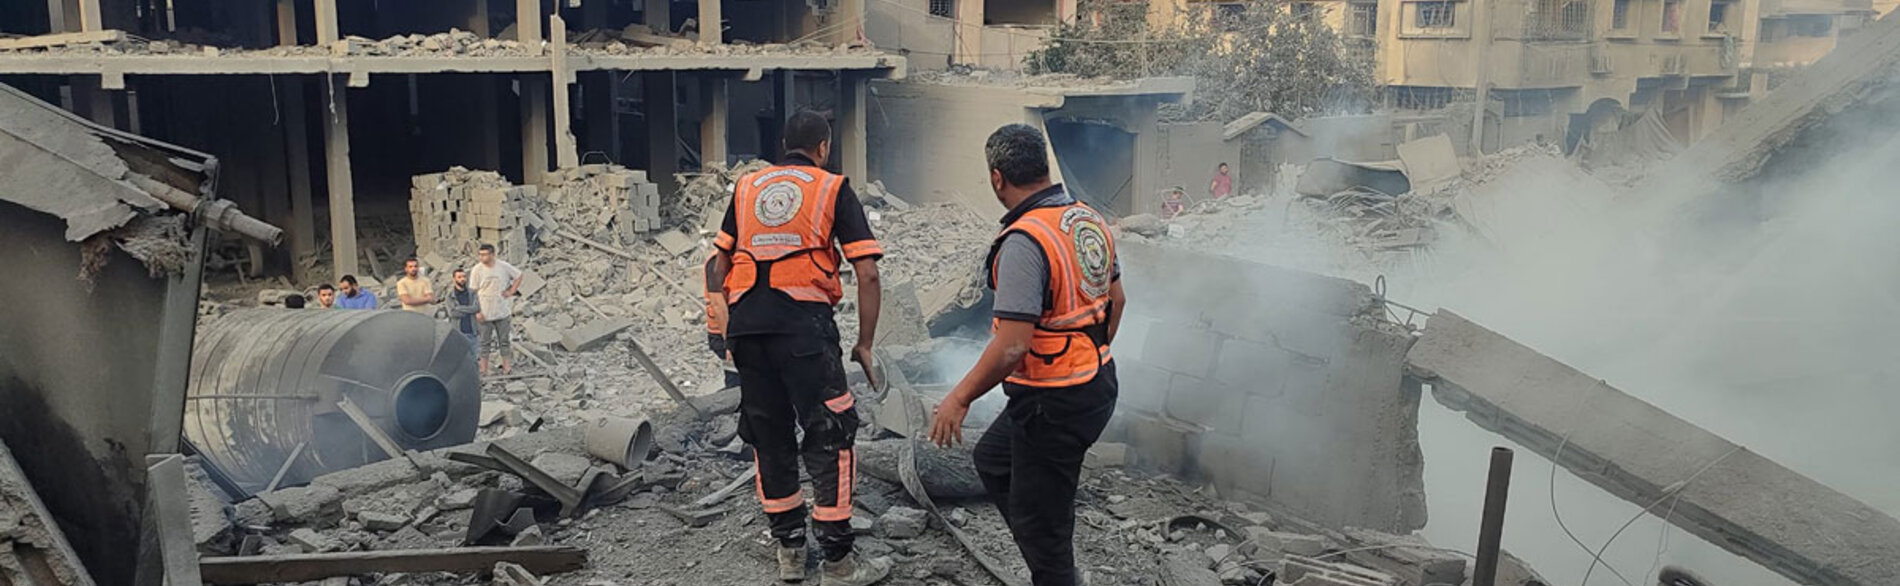 فريق من الدفاع المدني في مهمة لإنقاذ الناجين وانتشال الجثث من تحت الأنقاض في منطقة سكنية في غزة. وتفيد التقارير بأن نحو 2,700 شخص، من بينهم 1,500 طفل تقريبًا، في عداد المفقودين. وقتل 18 من أفراد الدفاع المدني منذ 7 تشرين الأول/أكتوبر، حسبما أشارت التقارير. تصوير الدفاع المدني، 2 تشرين الثاني/نوفمبر 2023.